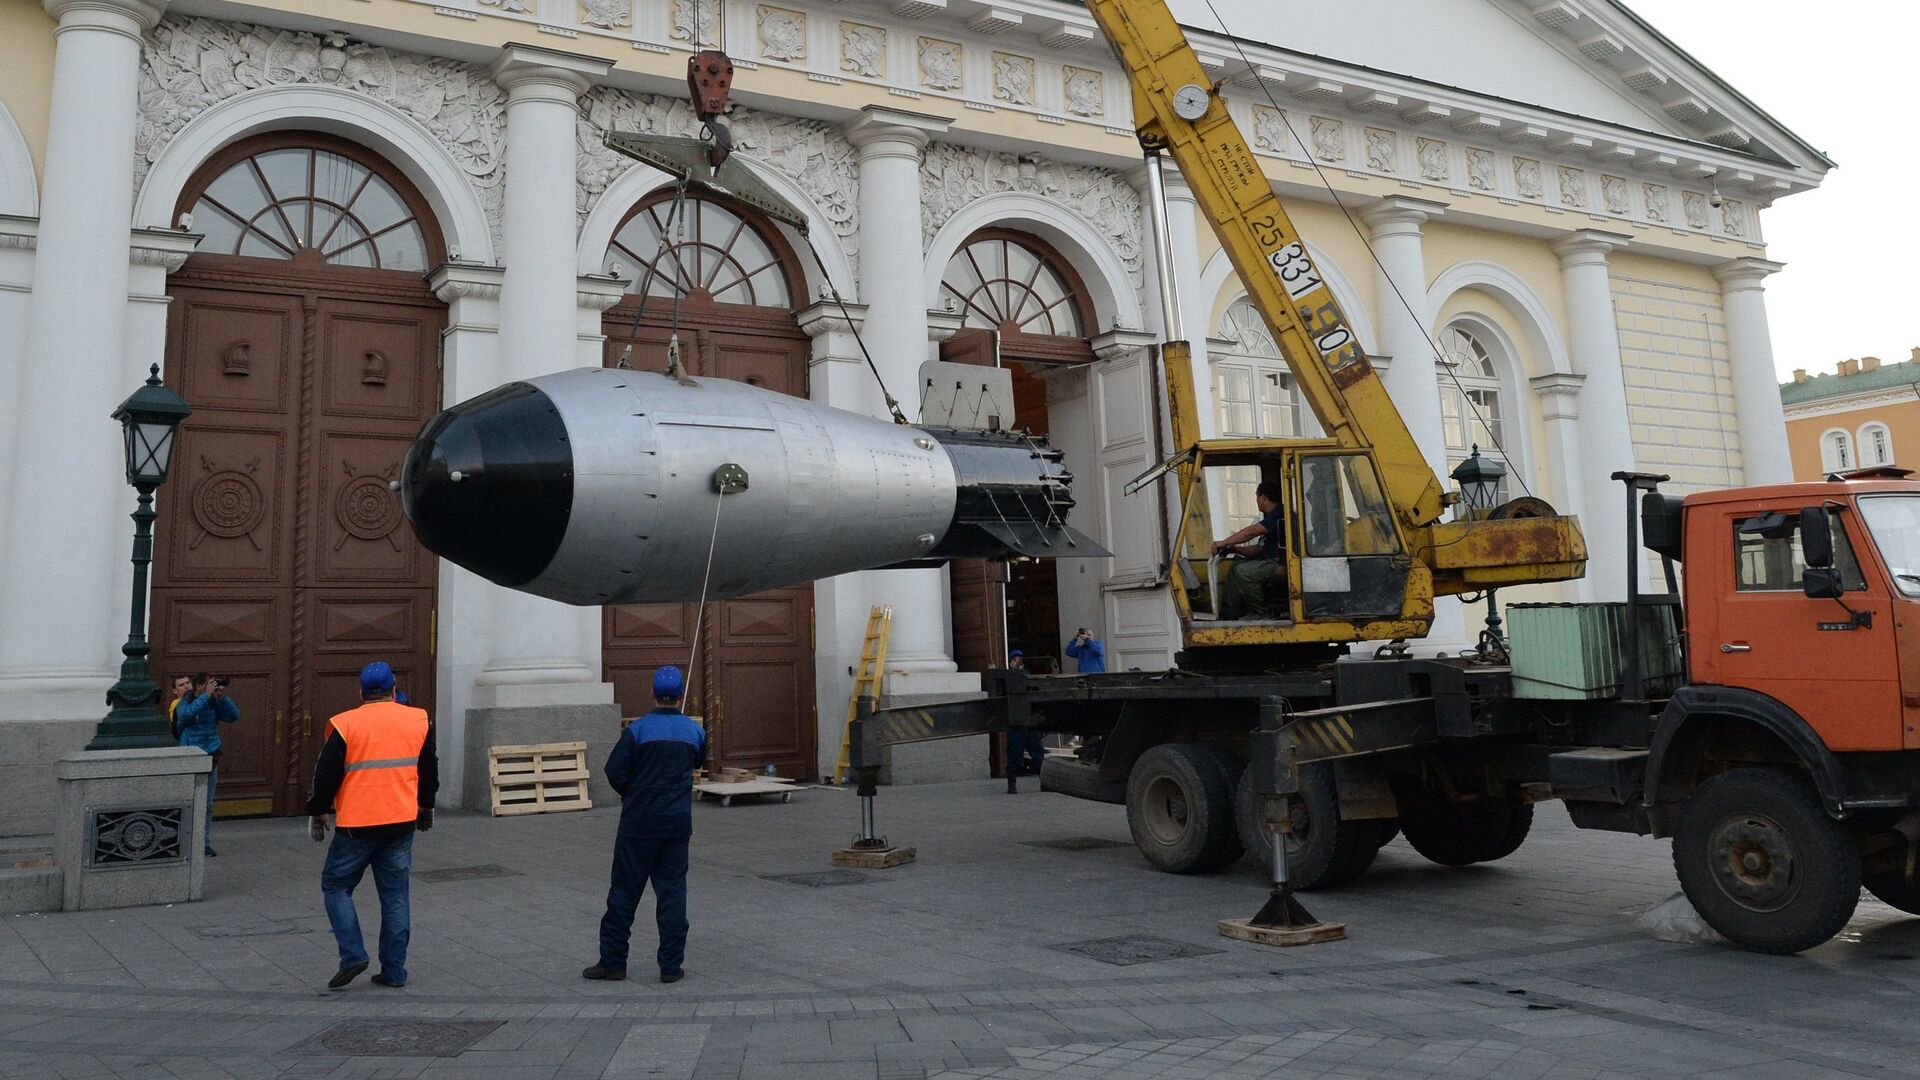 Копия термоядерной Царь-бомбы доставлена в Москву - РИА Новости, 1920, 30.10.2021